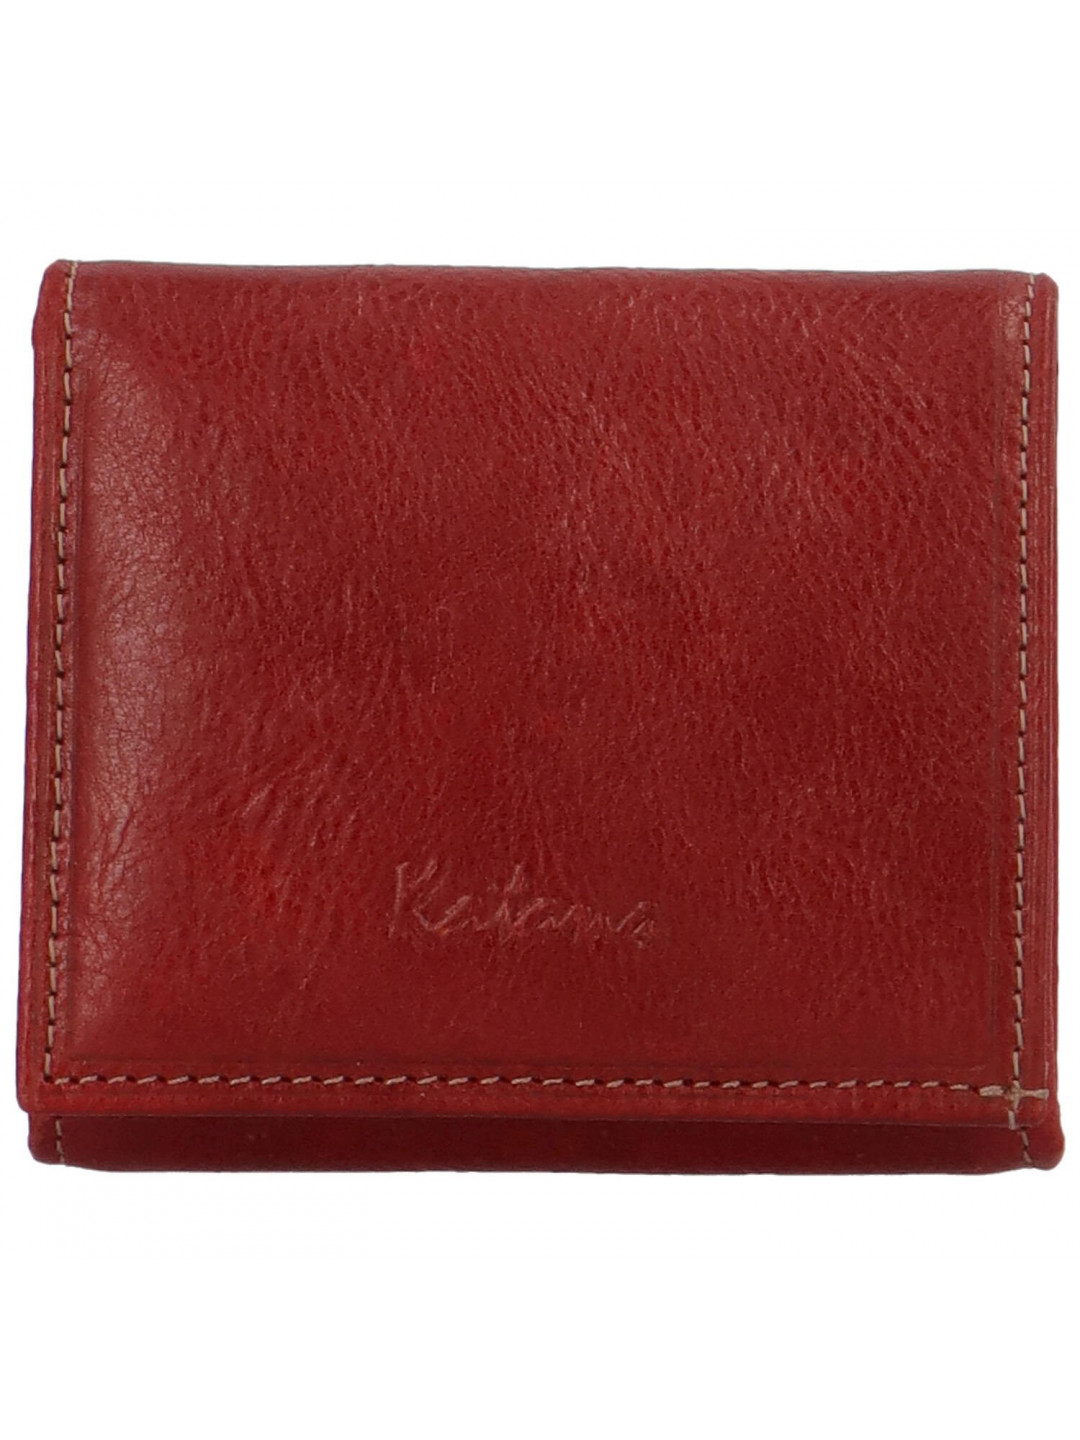 Dámská kožená peněženka červená – Katana Triwia